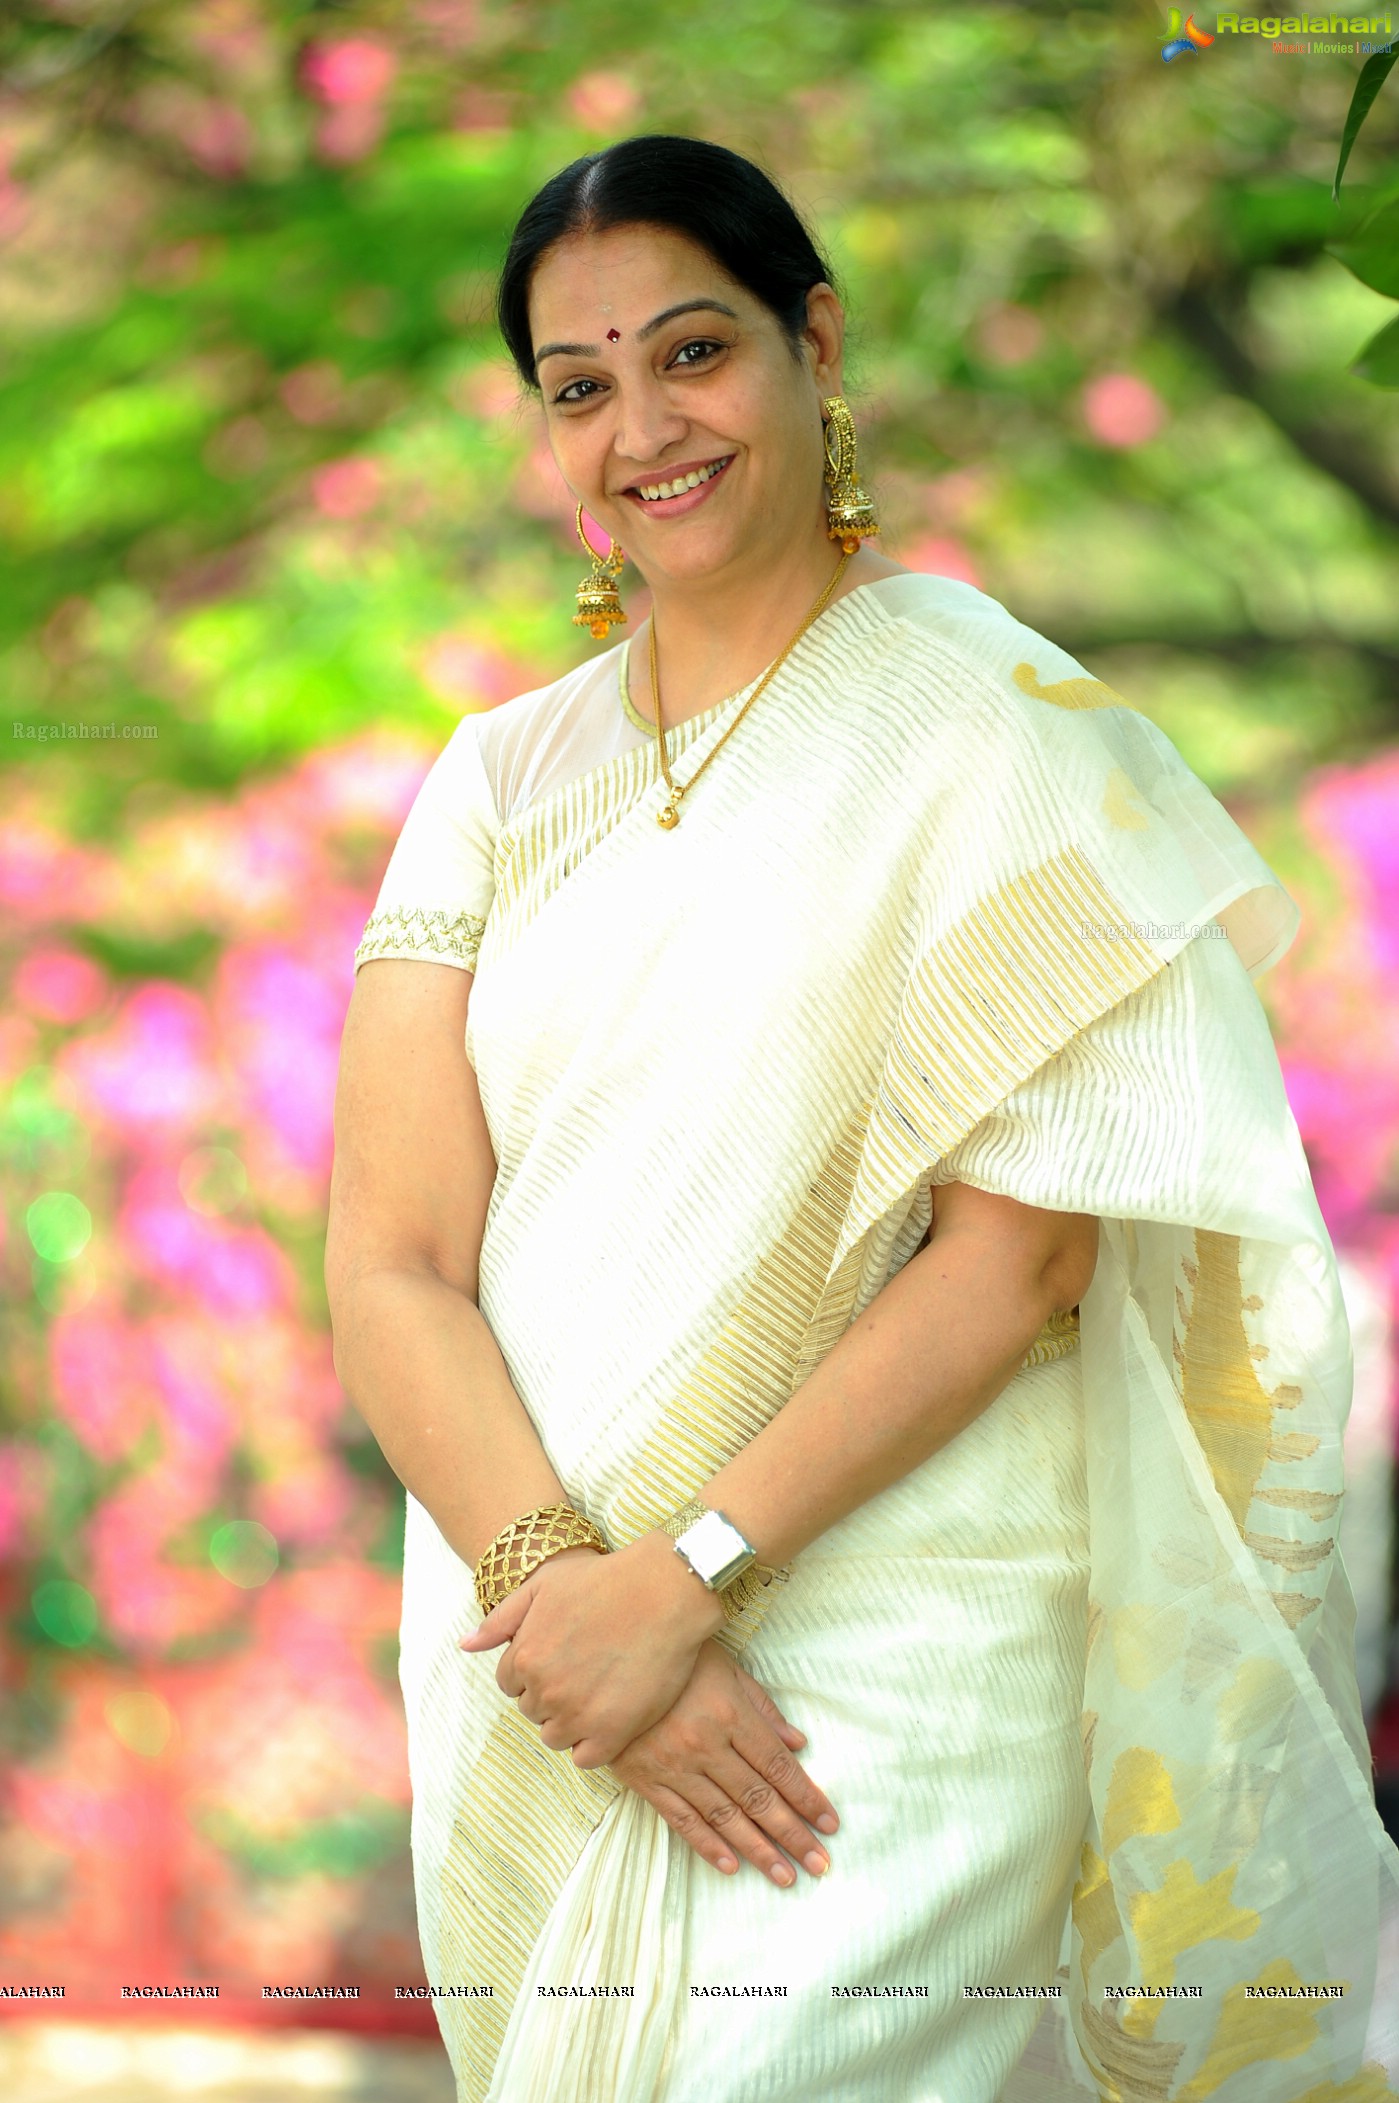 Latest Photo Of Jayalalitha , HD Wallpaper & Backgrounds